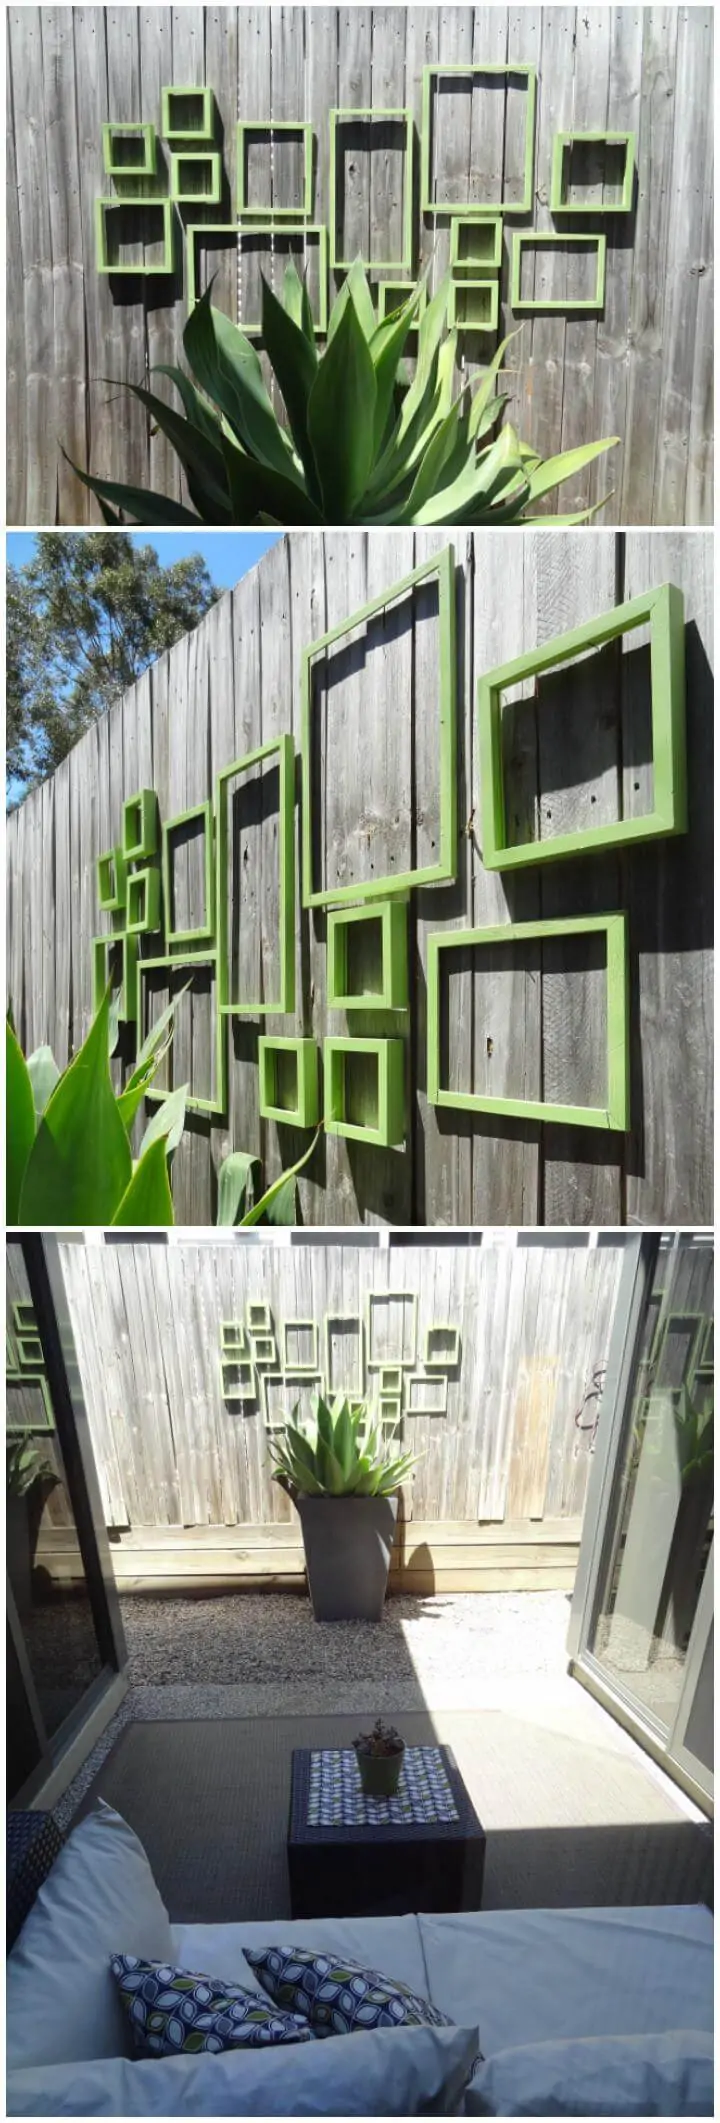 valla de jardín de marcos viejos reciclados decoración